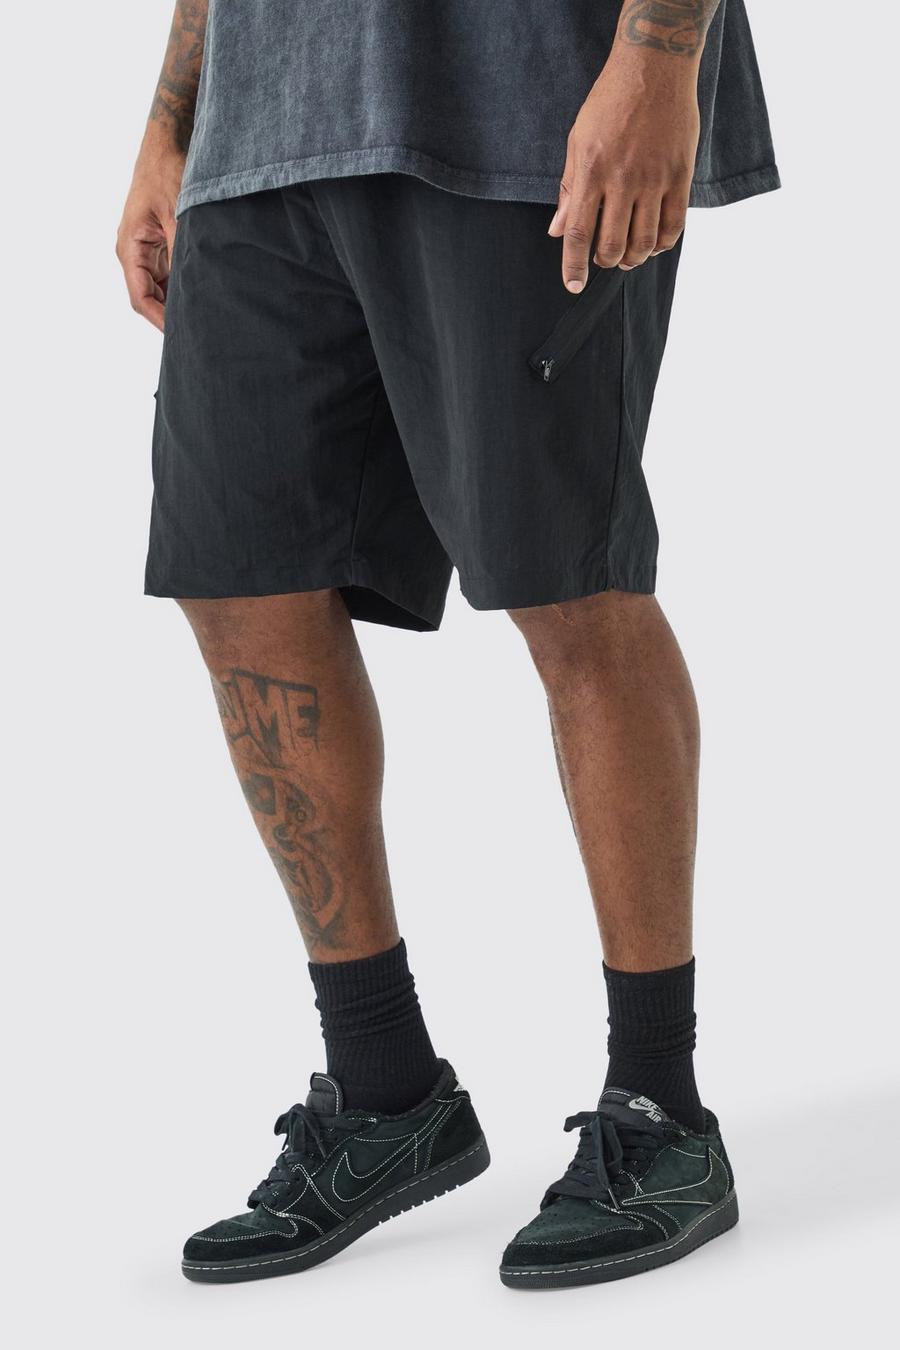 Pantalón corto Plus asimétrico con cintura elástica y cremallera, Black